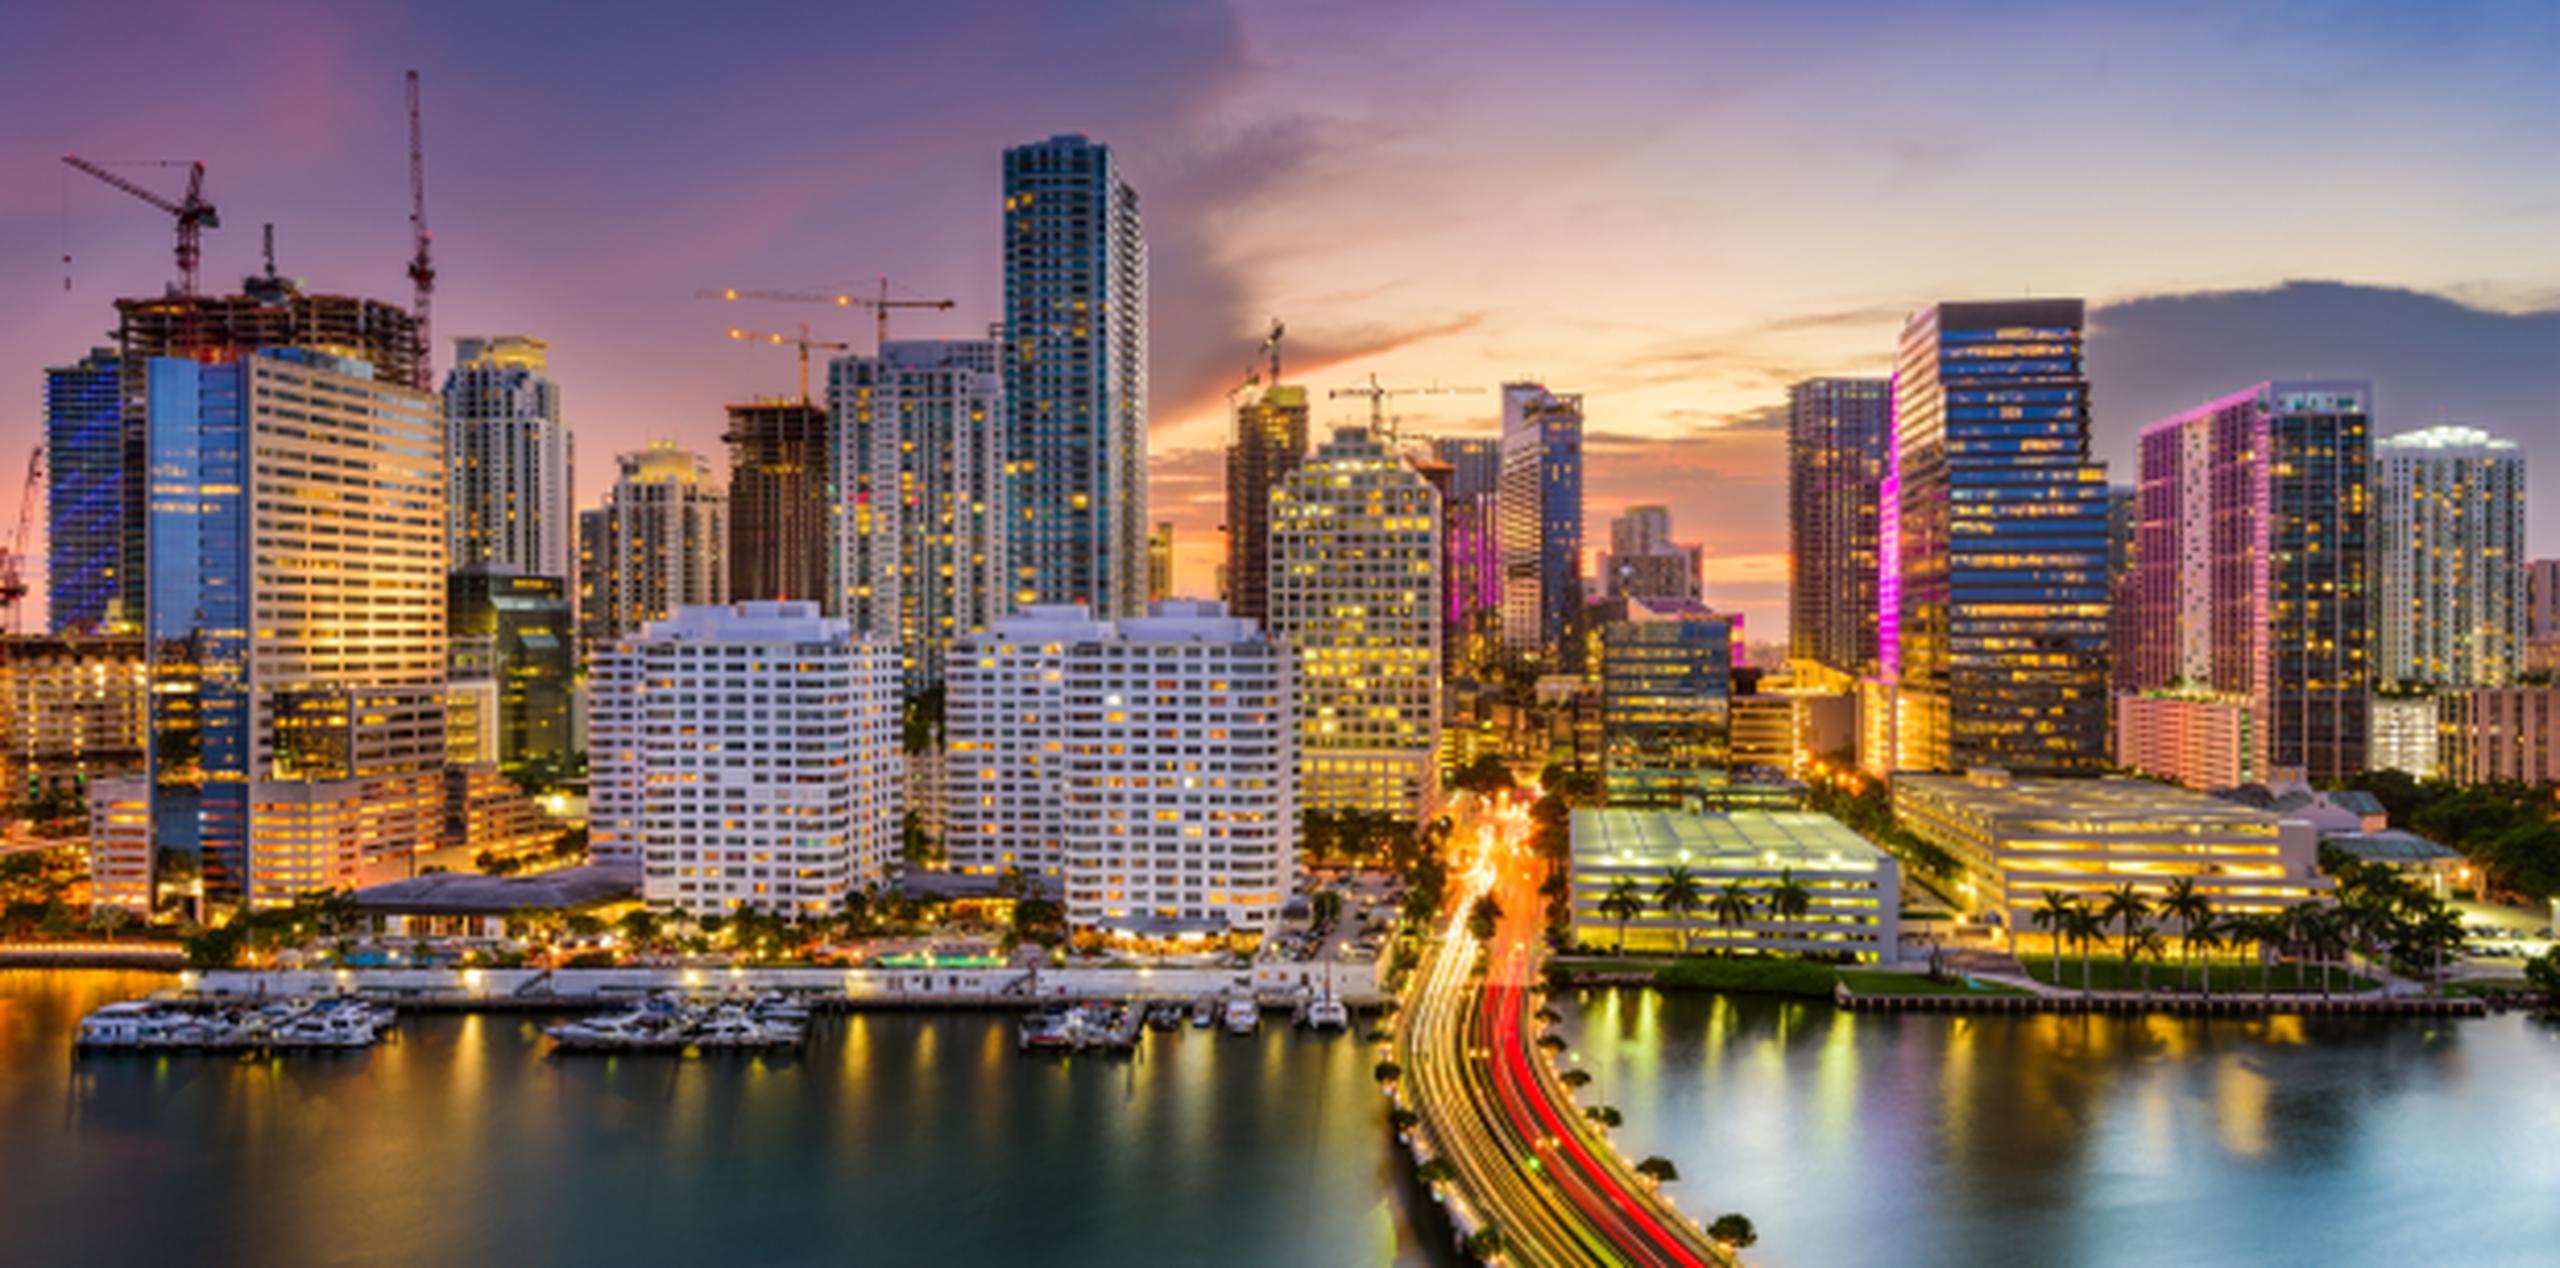 Miami ocupa el quinto lugar. (Shutterstock)